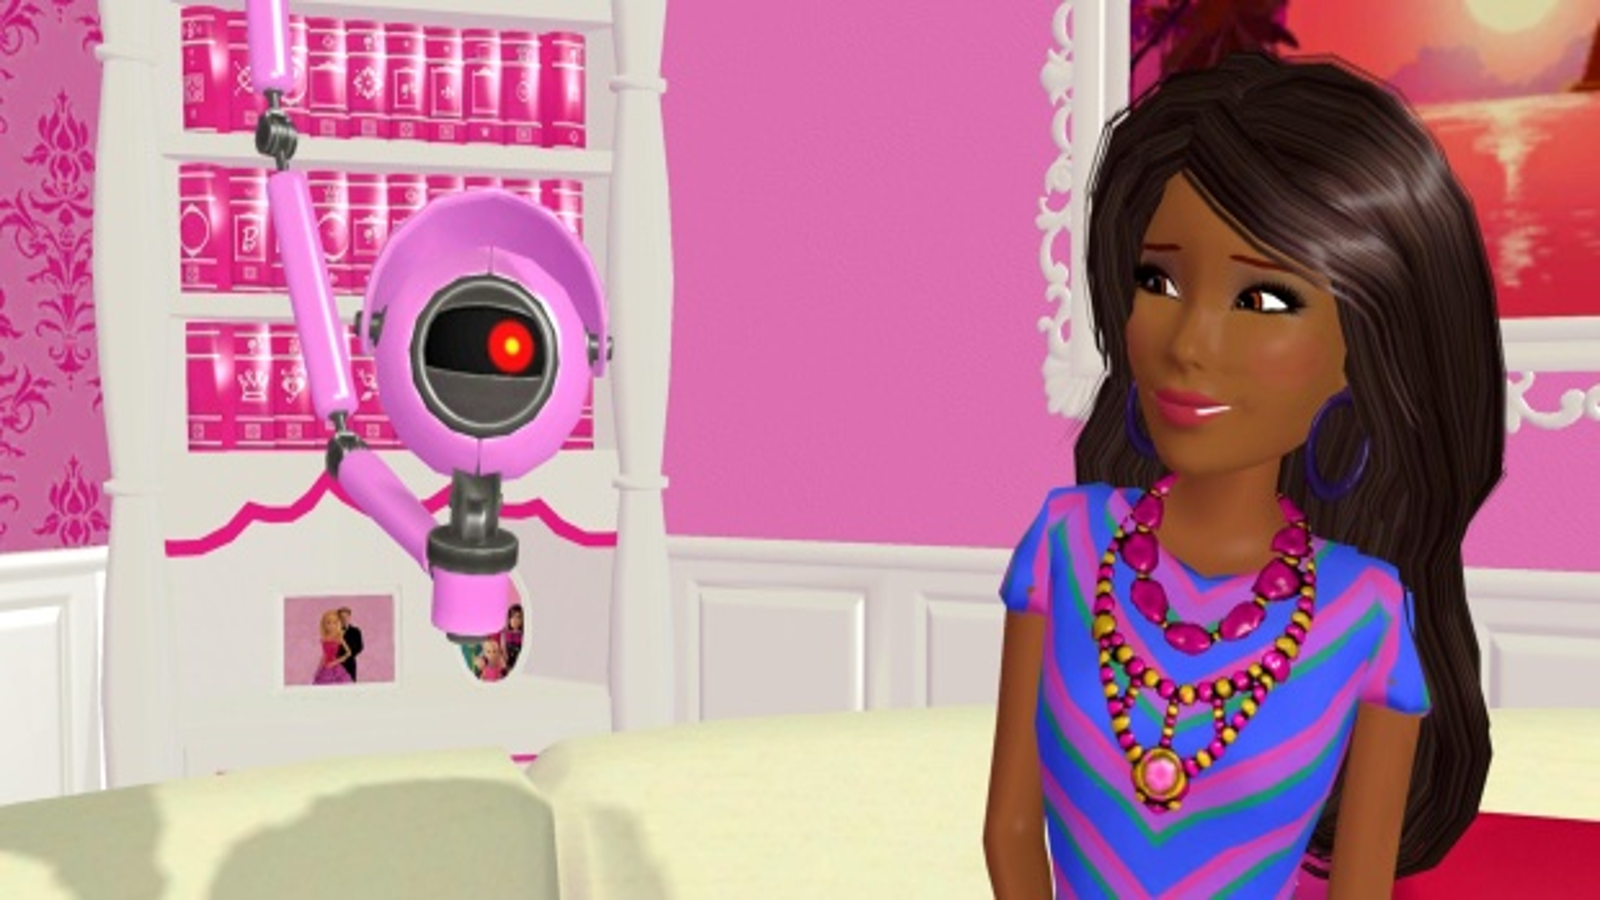 Barbie Dreamhouse Adventures em Jogos na Internet